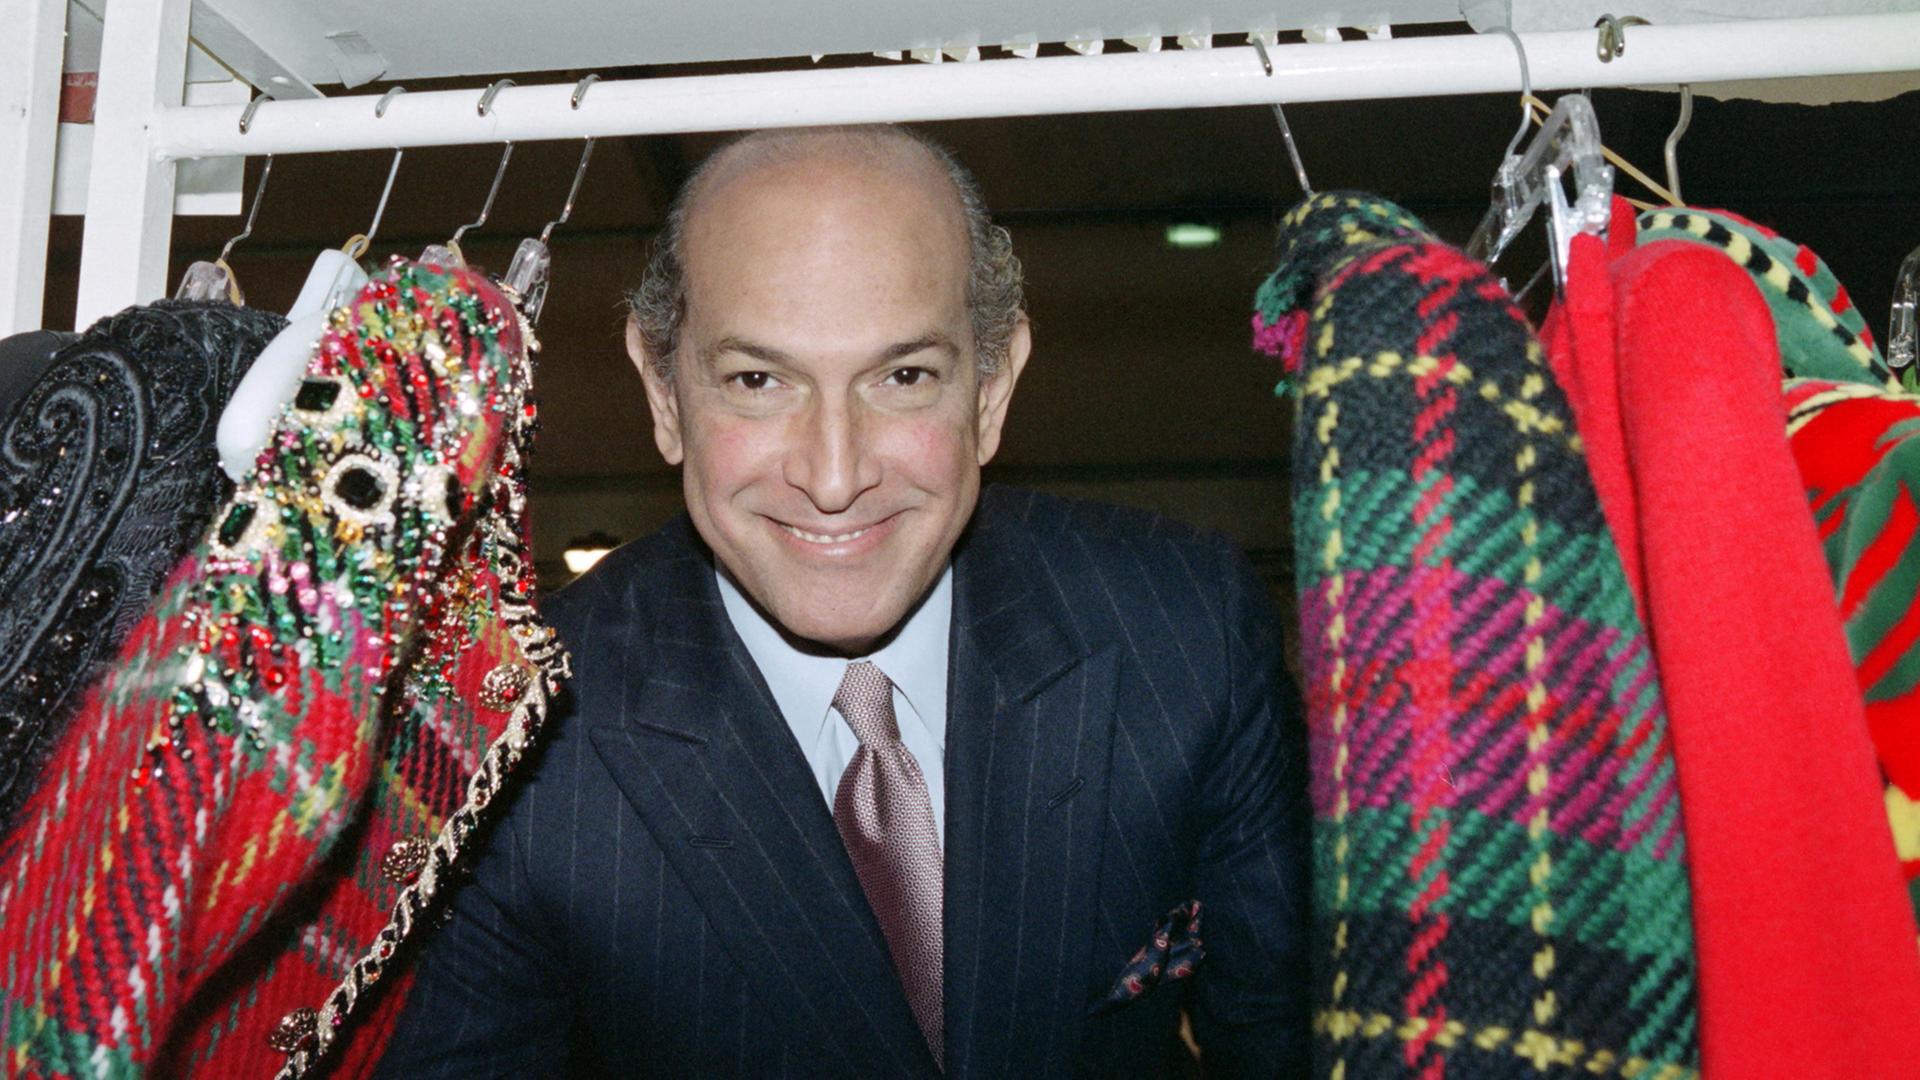 Der Designer schaut zwischen Mänteln hindurch, die auf einer Kleiderstange hängen.